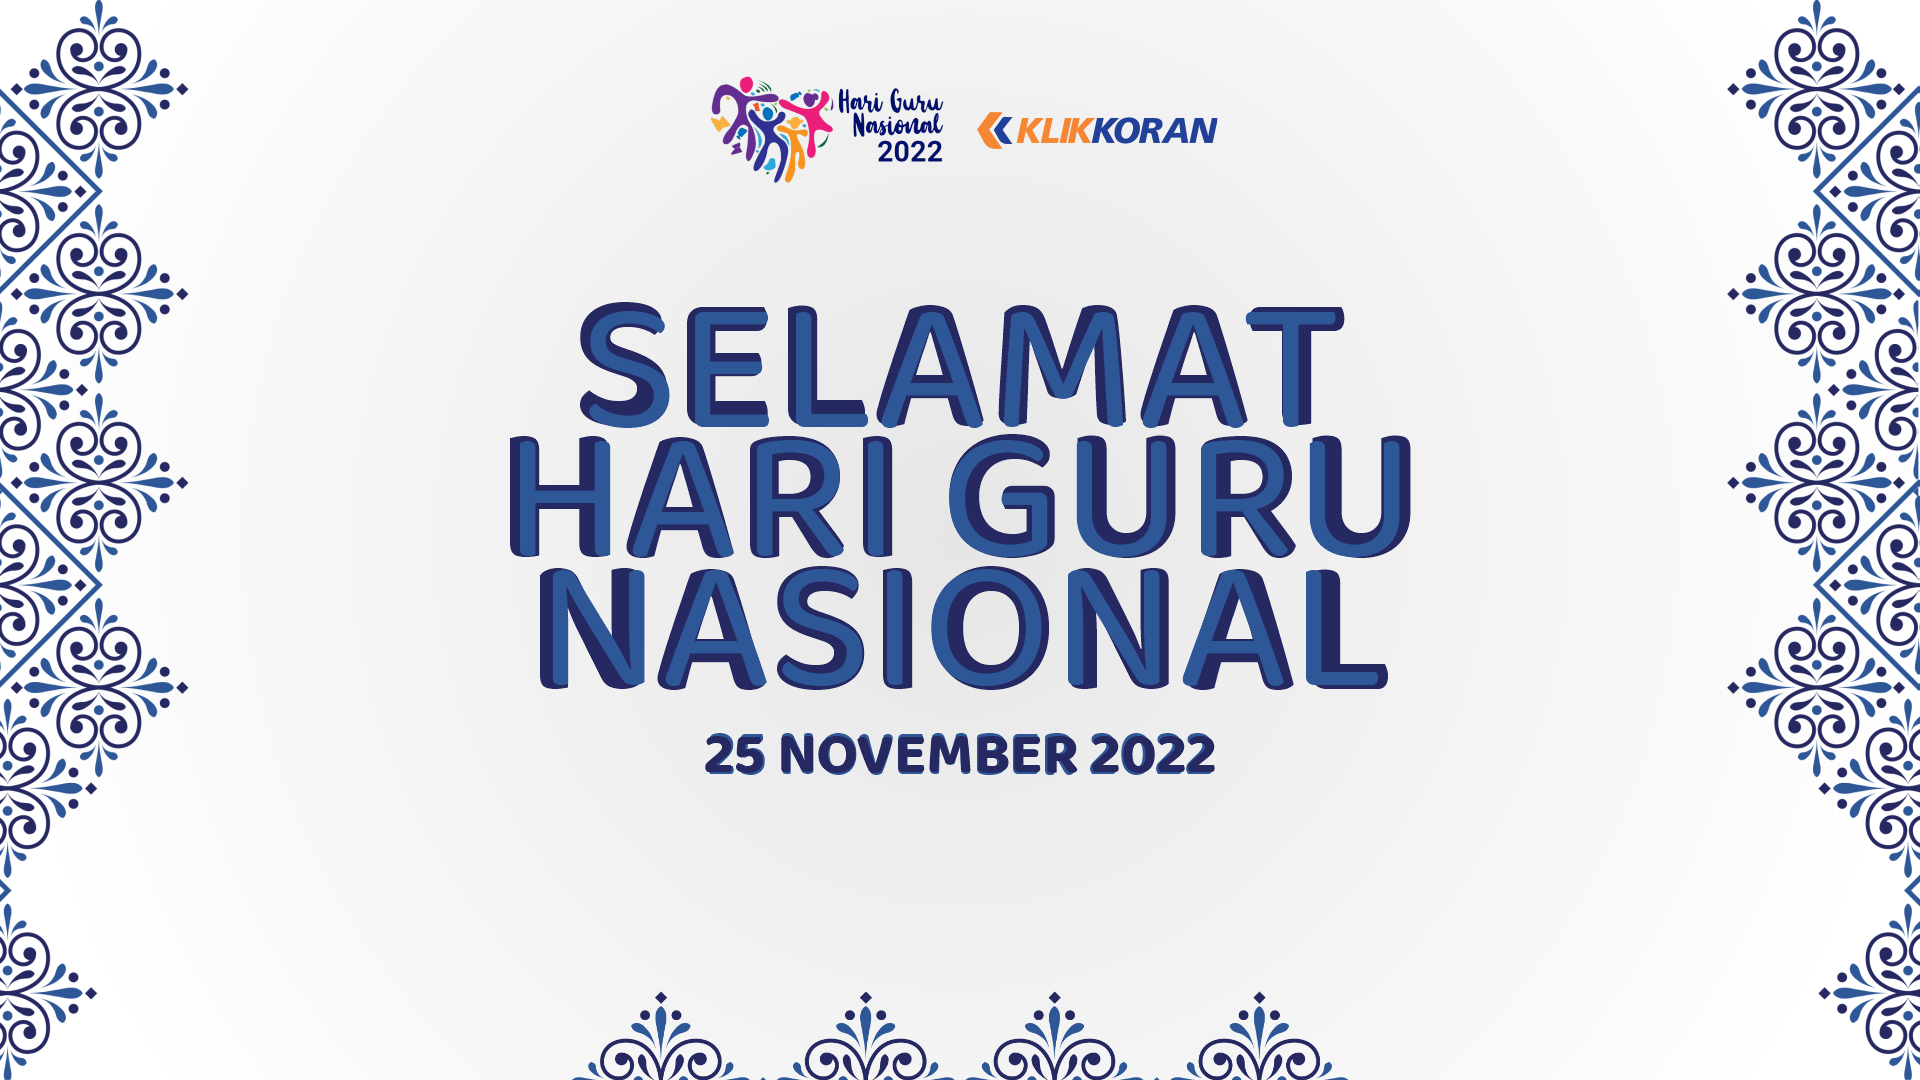 Logo Hari Guru Nasional 25 November 2022 (Foto: Kemendikbud/Klikkoran)